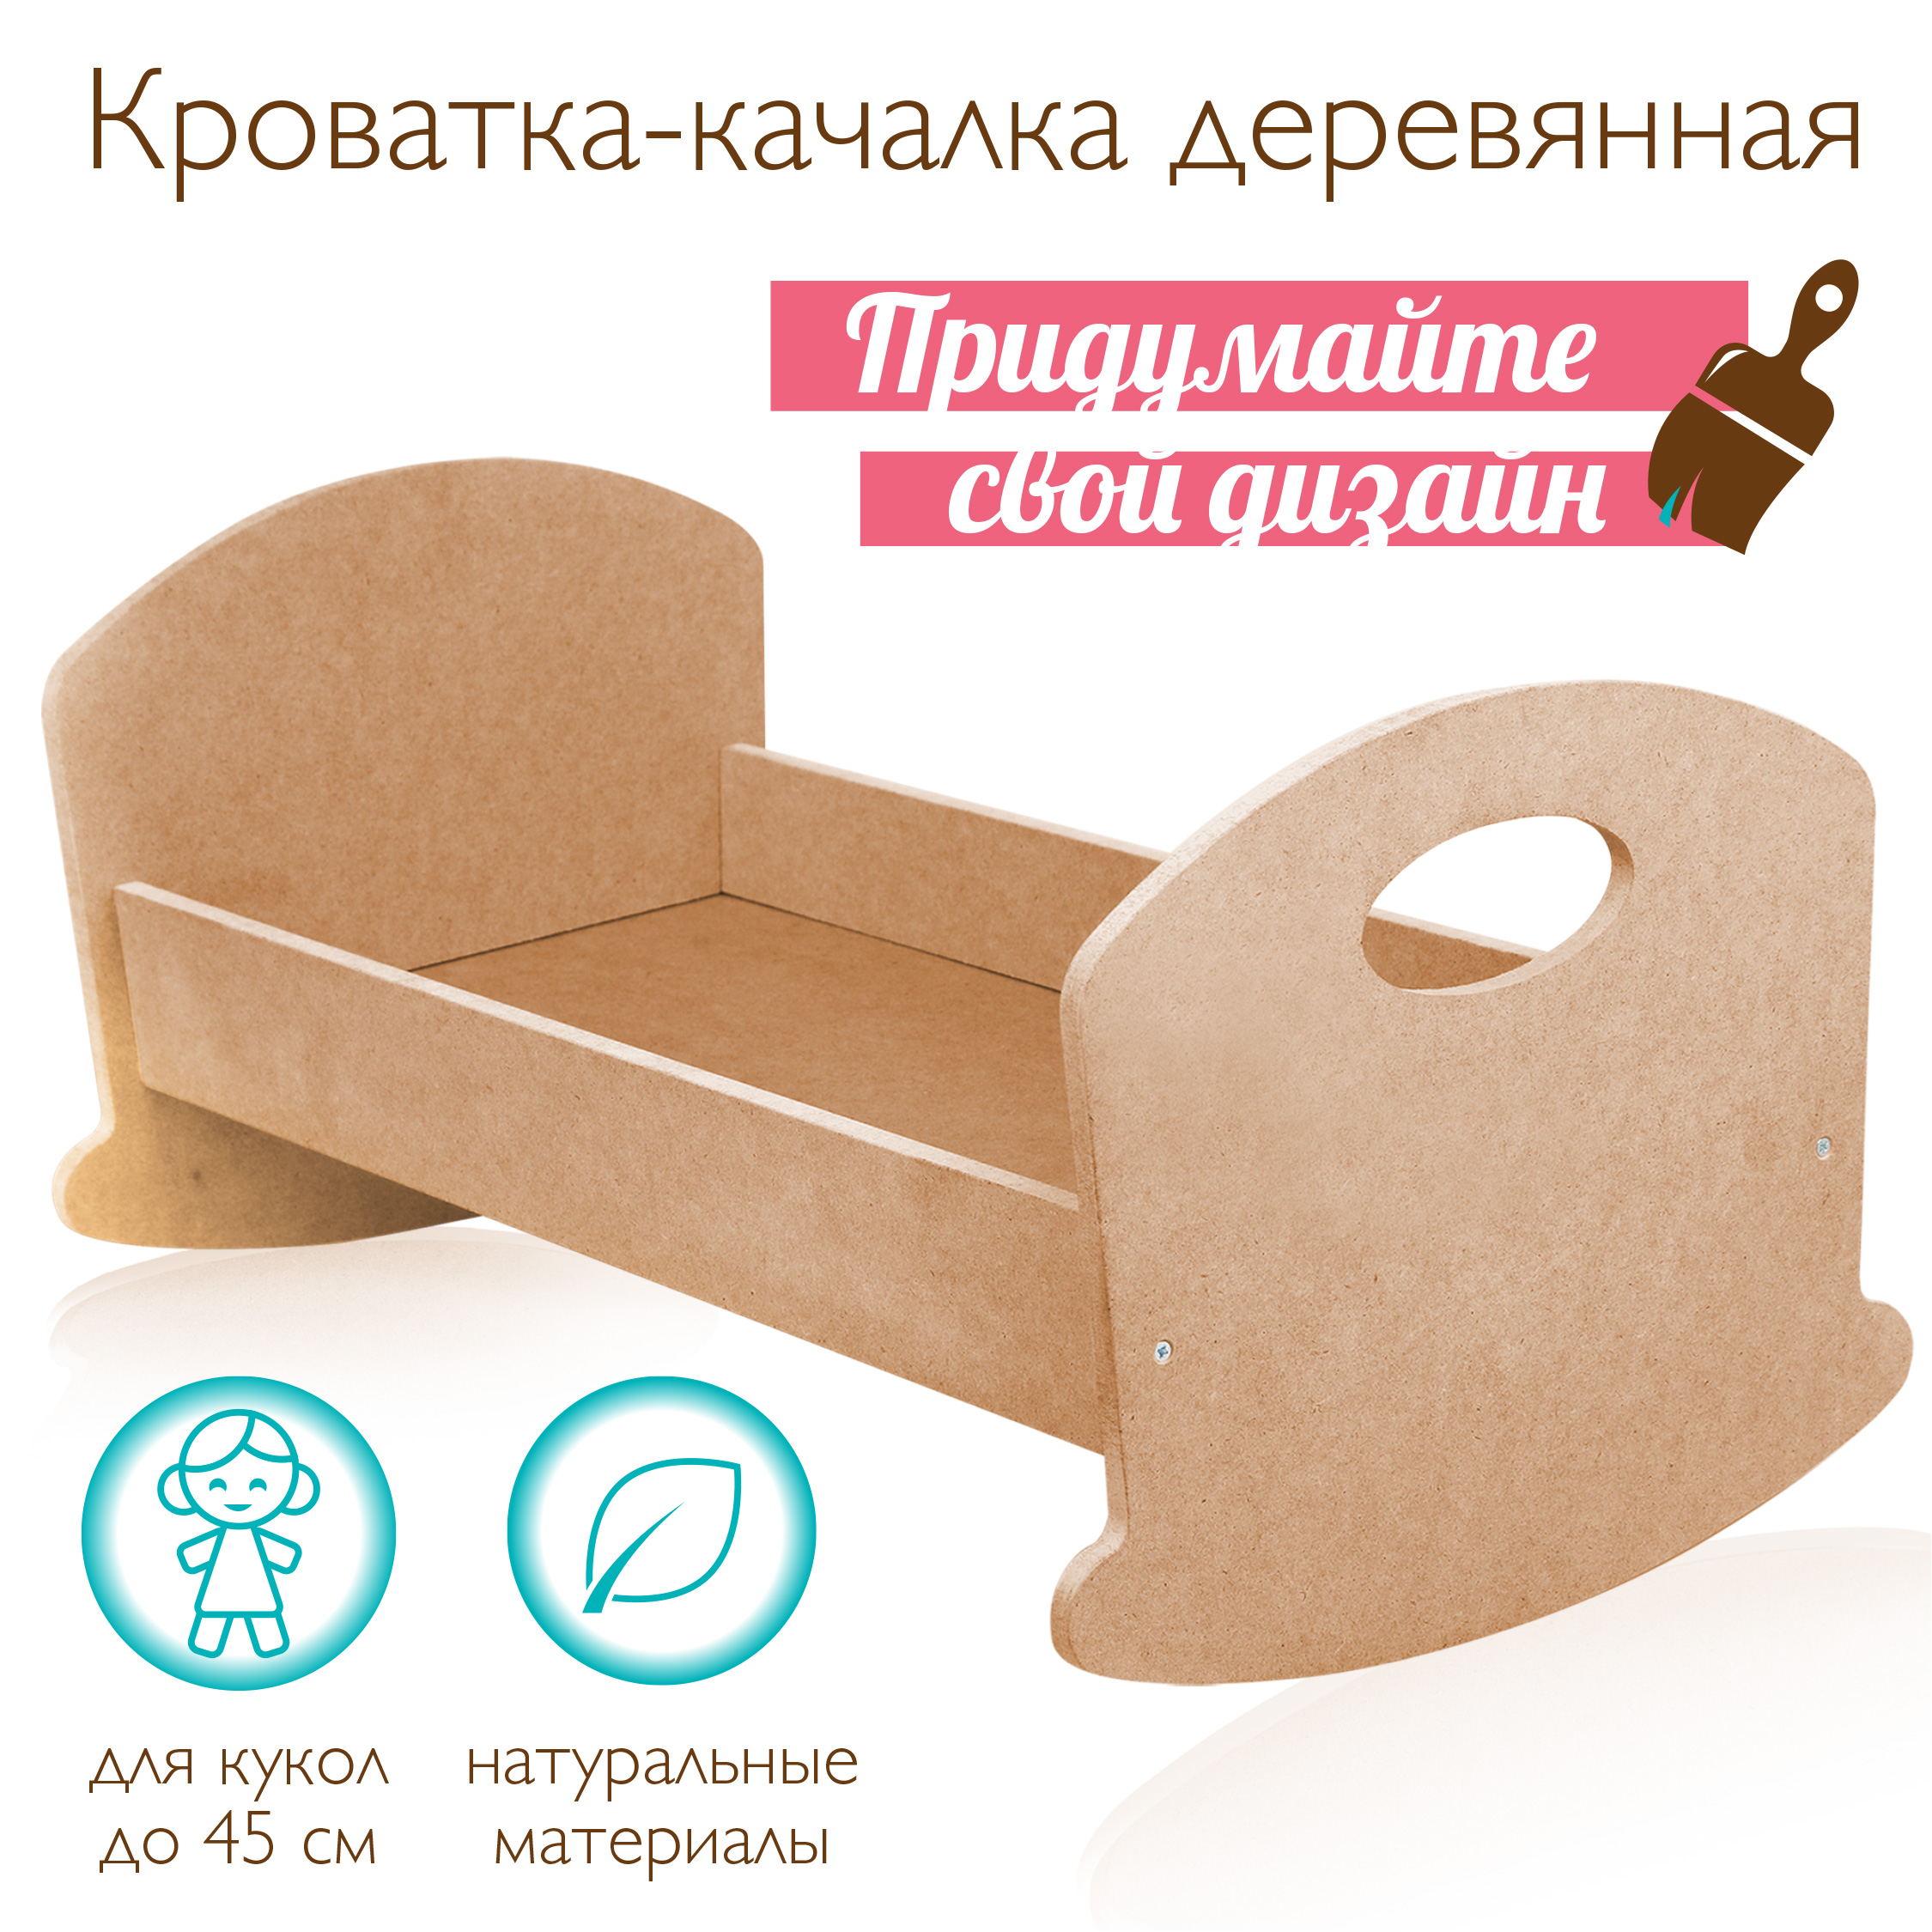 Кроватка-люлька для куклы Mary Poppins деревянная игрушечная 46x25x23 см создай свой дизайн 67405 - фото 2